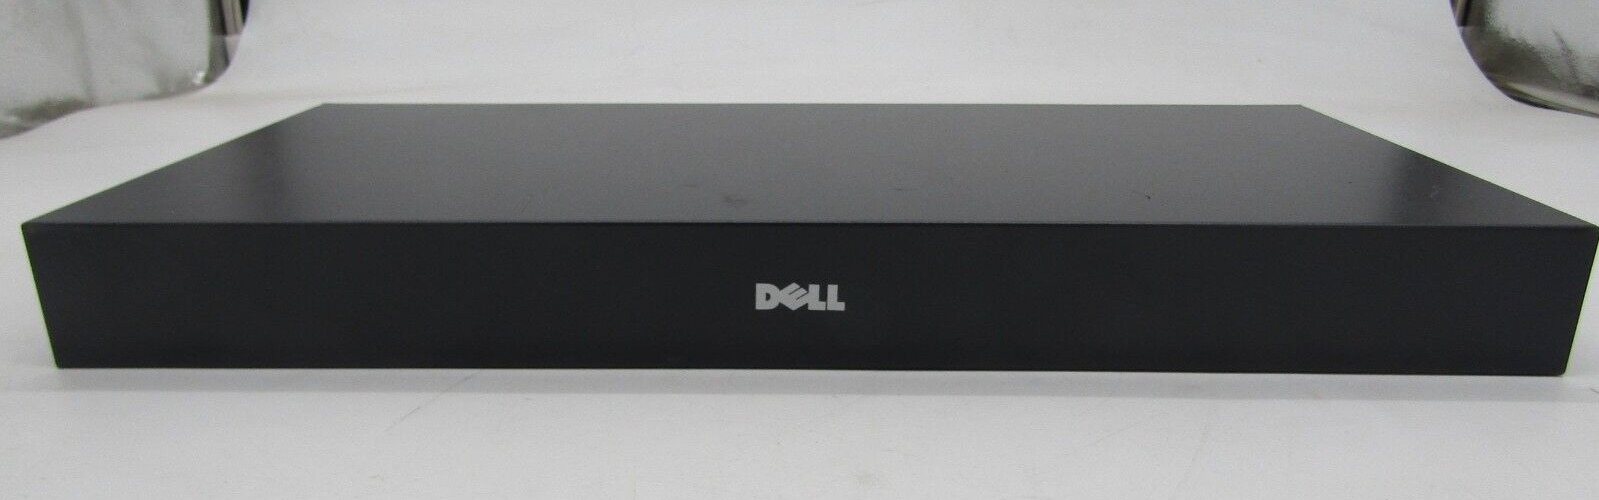 Dell KVM Switch Box 8 Port  71PXP